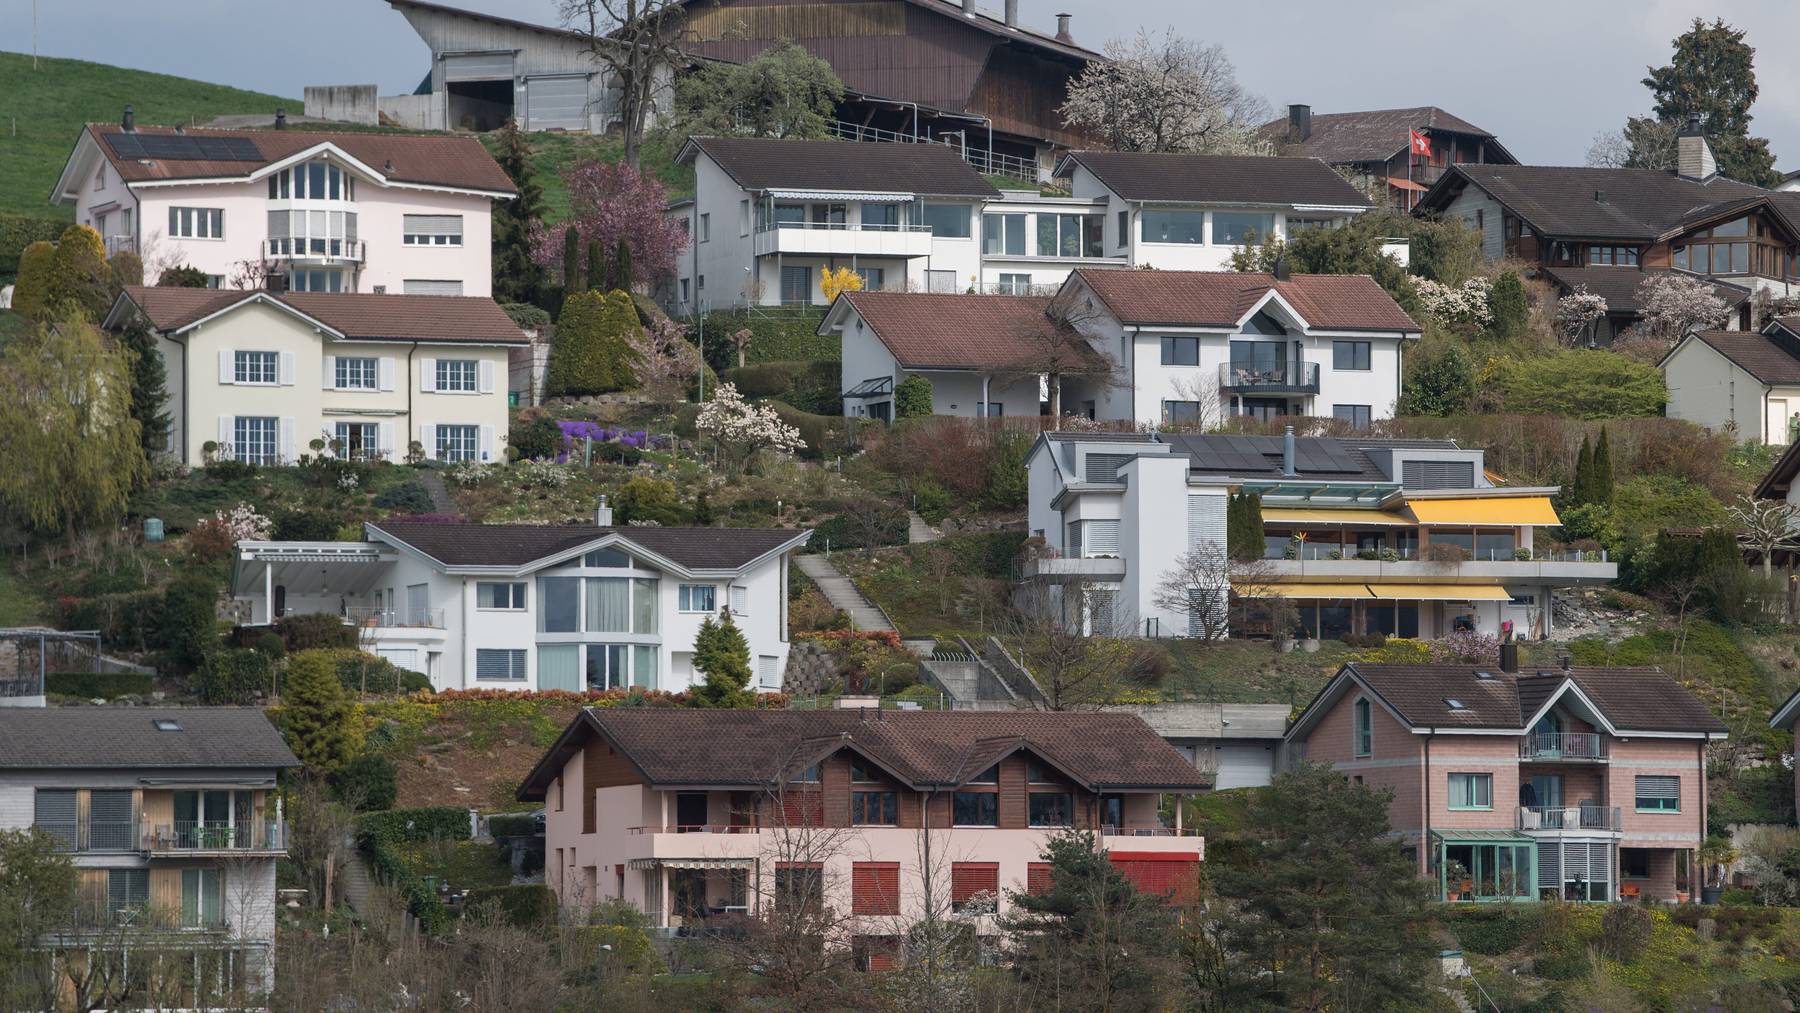 Einfamilienhäuser – wie hier in Adligenswil – sind in der Schweiz weiterhin sehr beliebt. (Symbolbild)